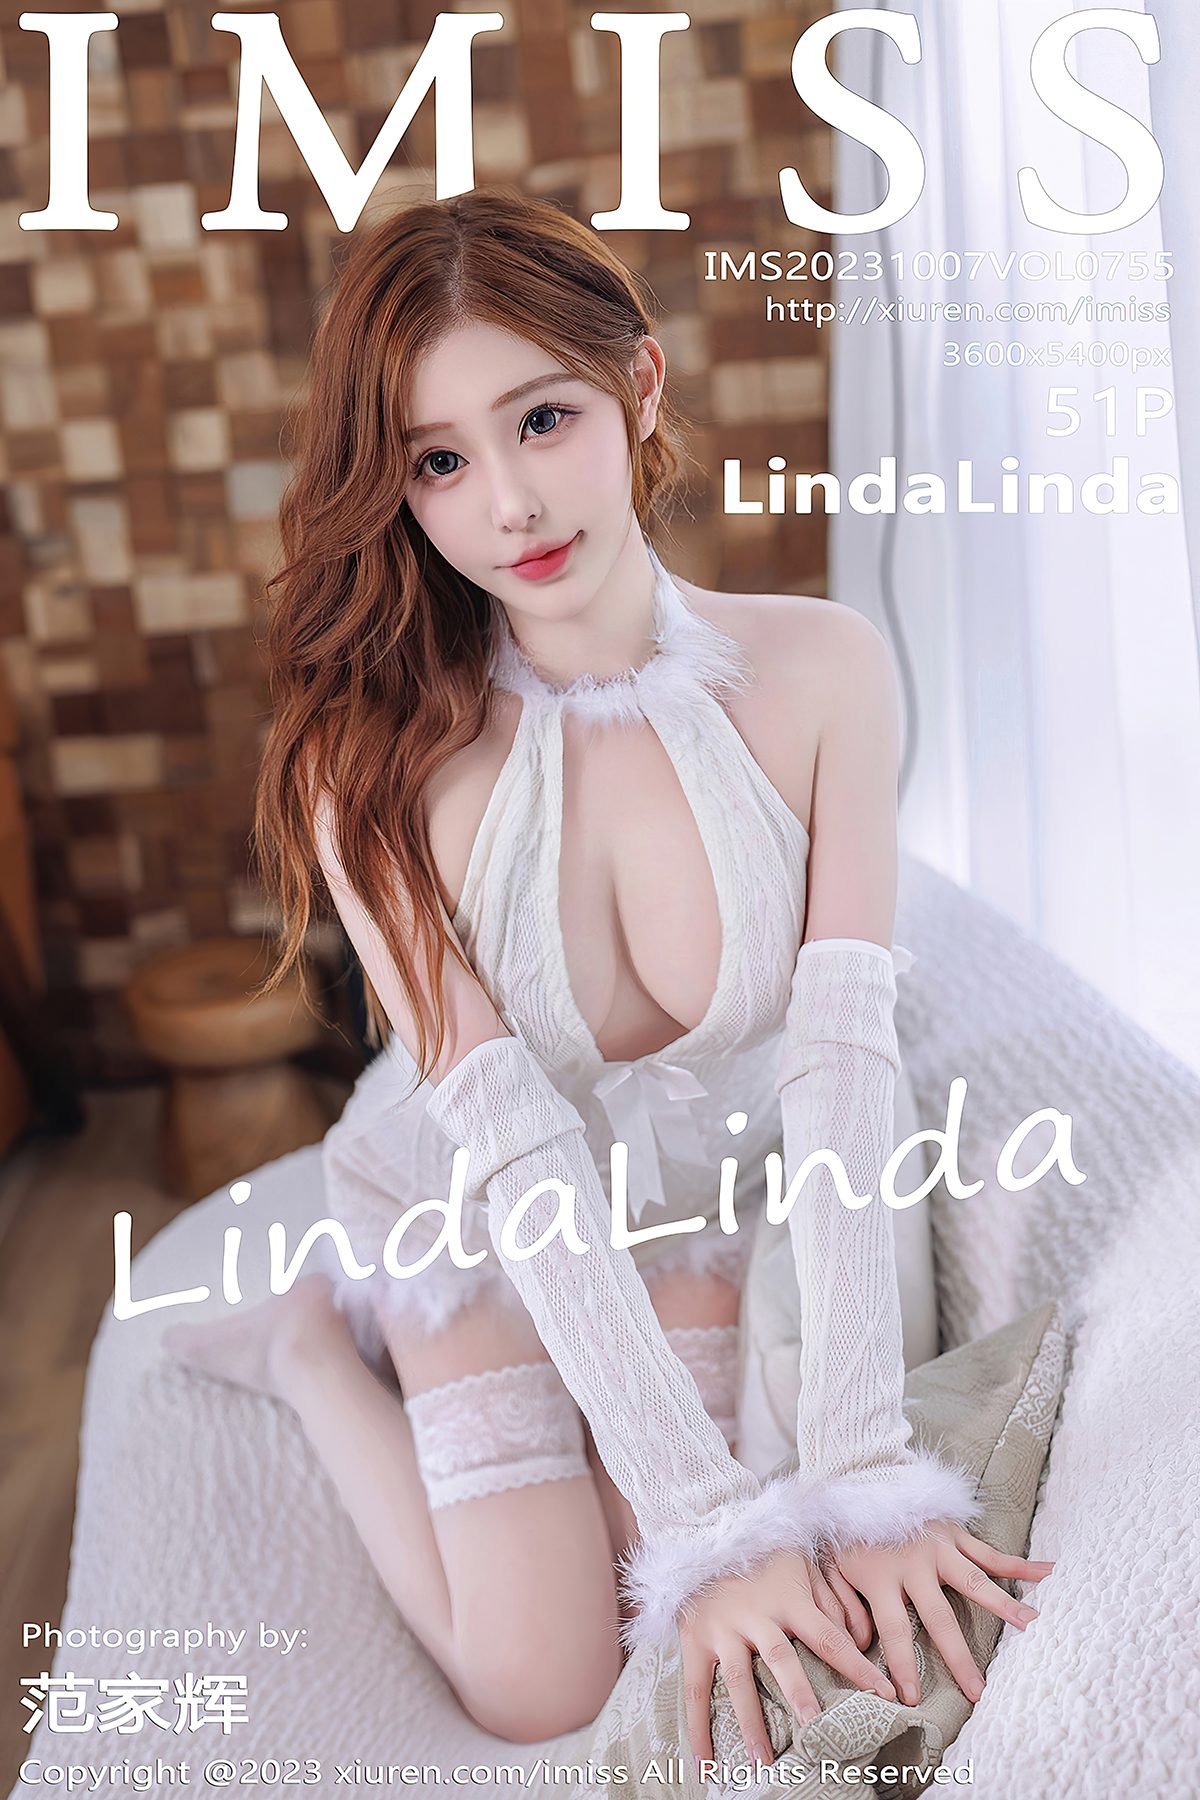 IMiss Vol.755 Linda Linda